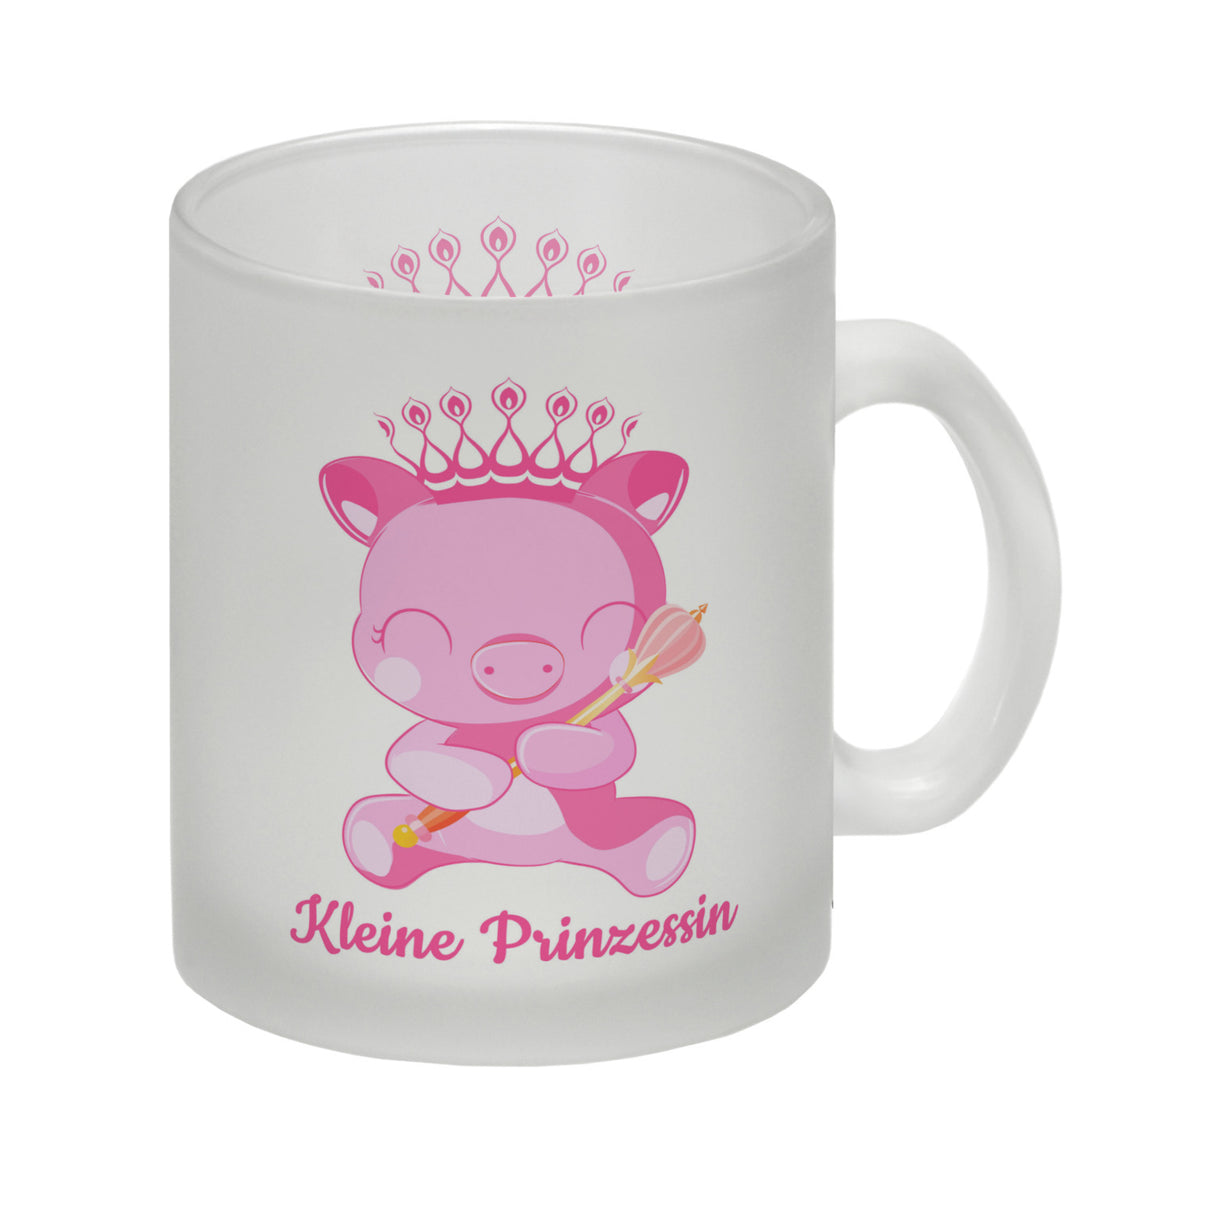 Kleine Prinzessin Kaffeebecher mit niedlichem Schweinchen